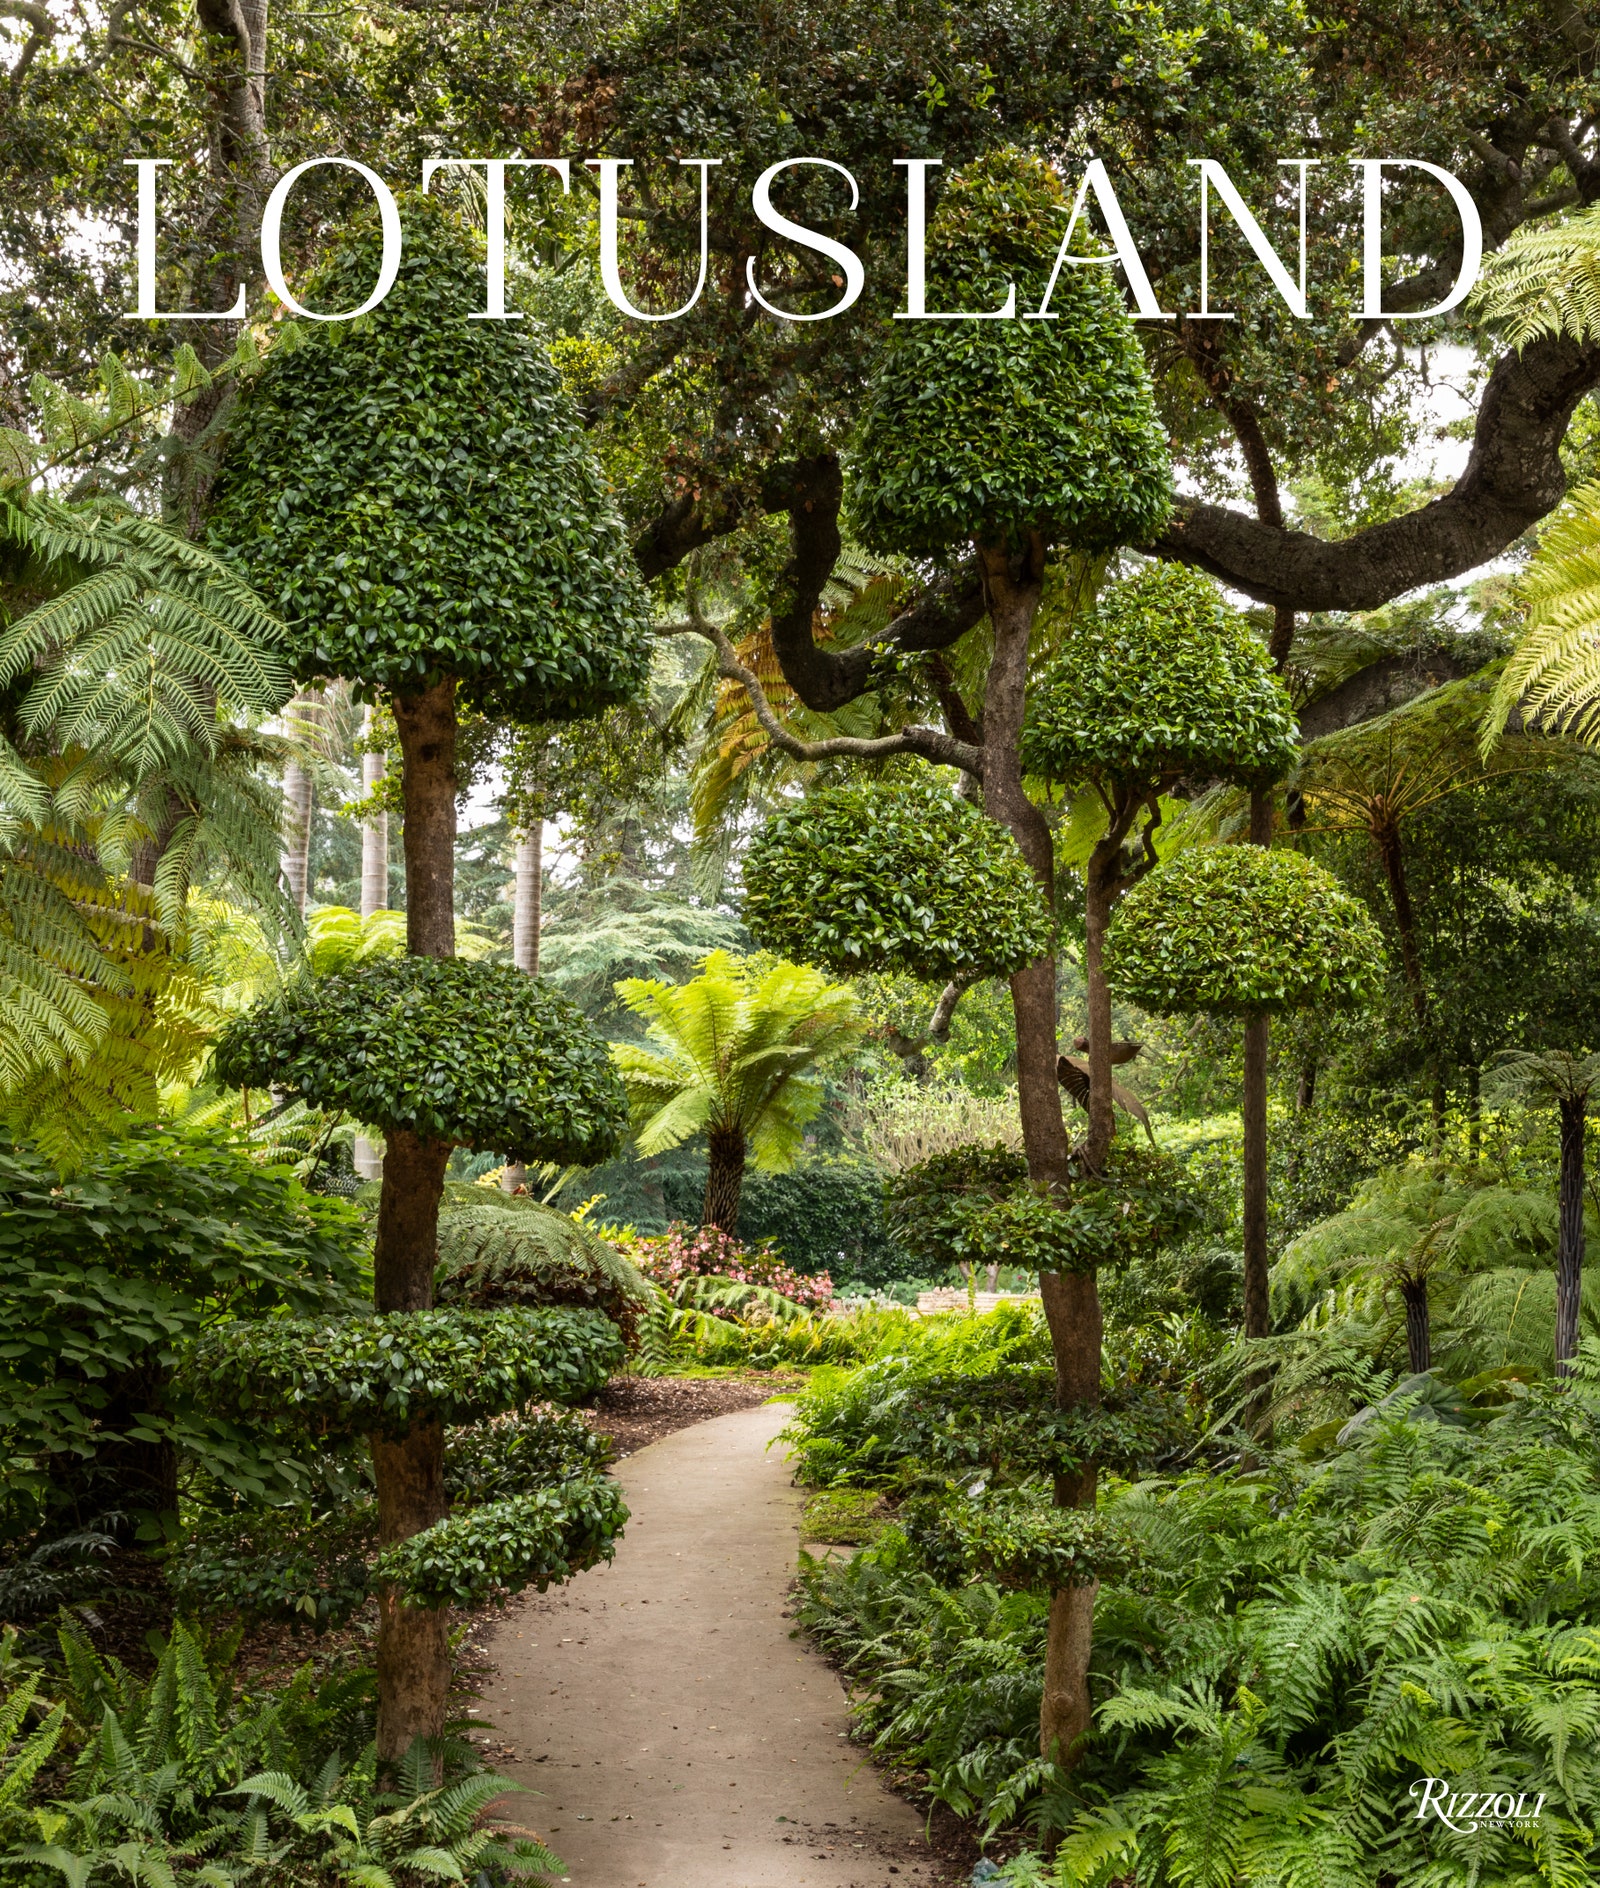 La couverture de Lotusland de Rizzoli photographiée par Lisa Romerein avec une préface de Marc Appleton.